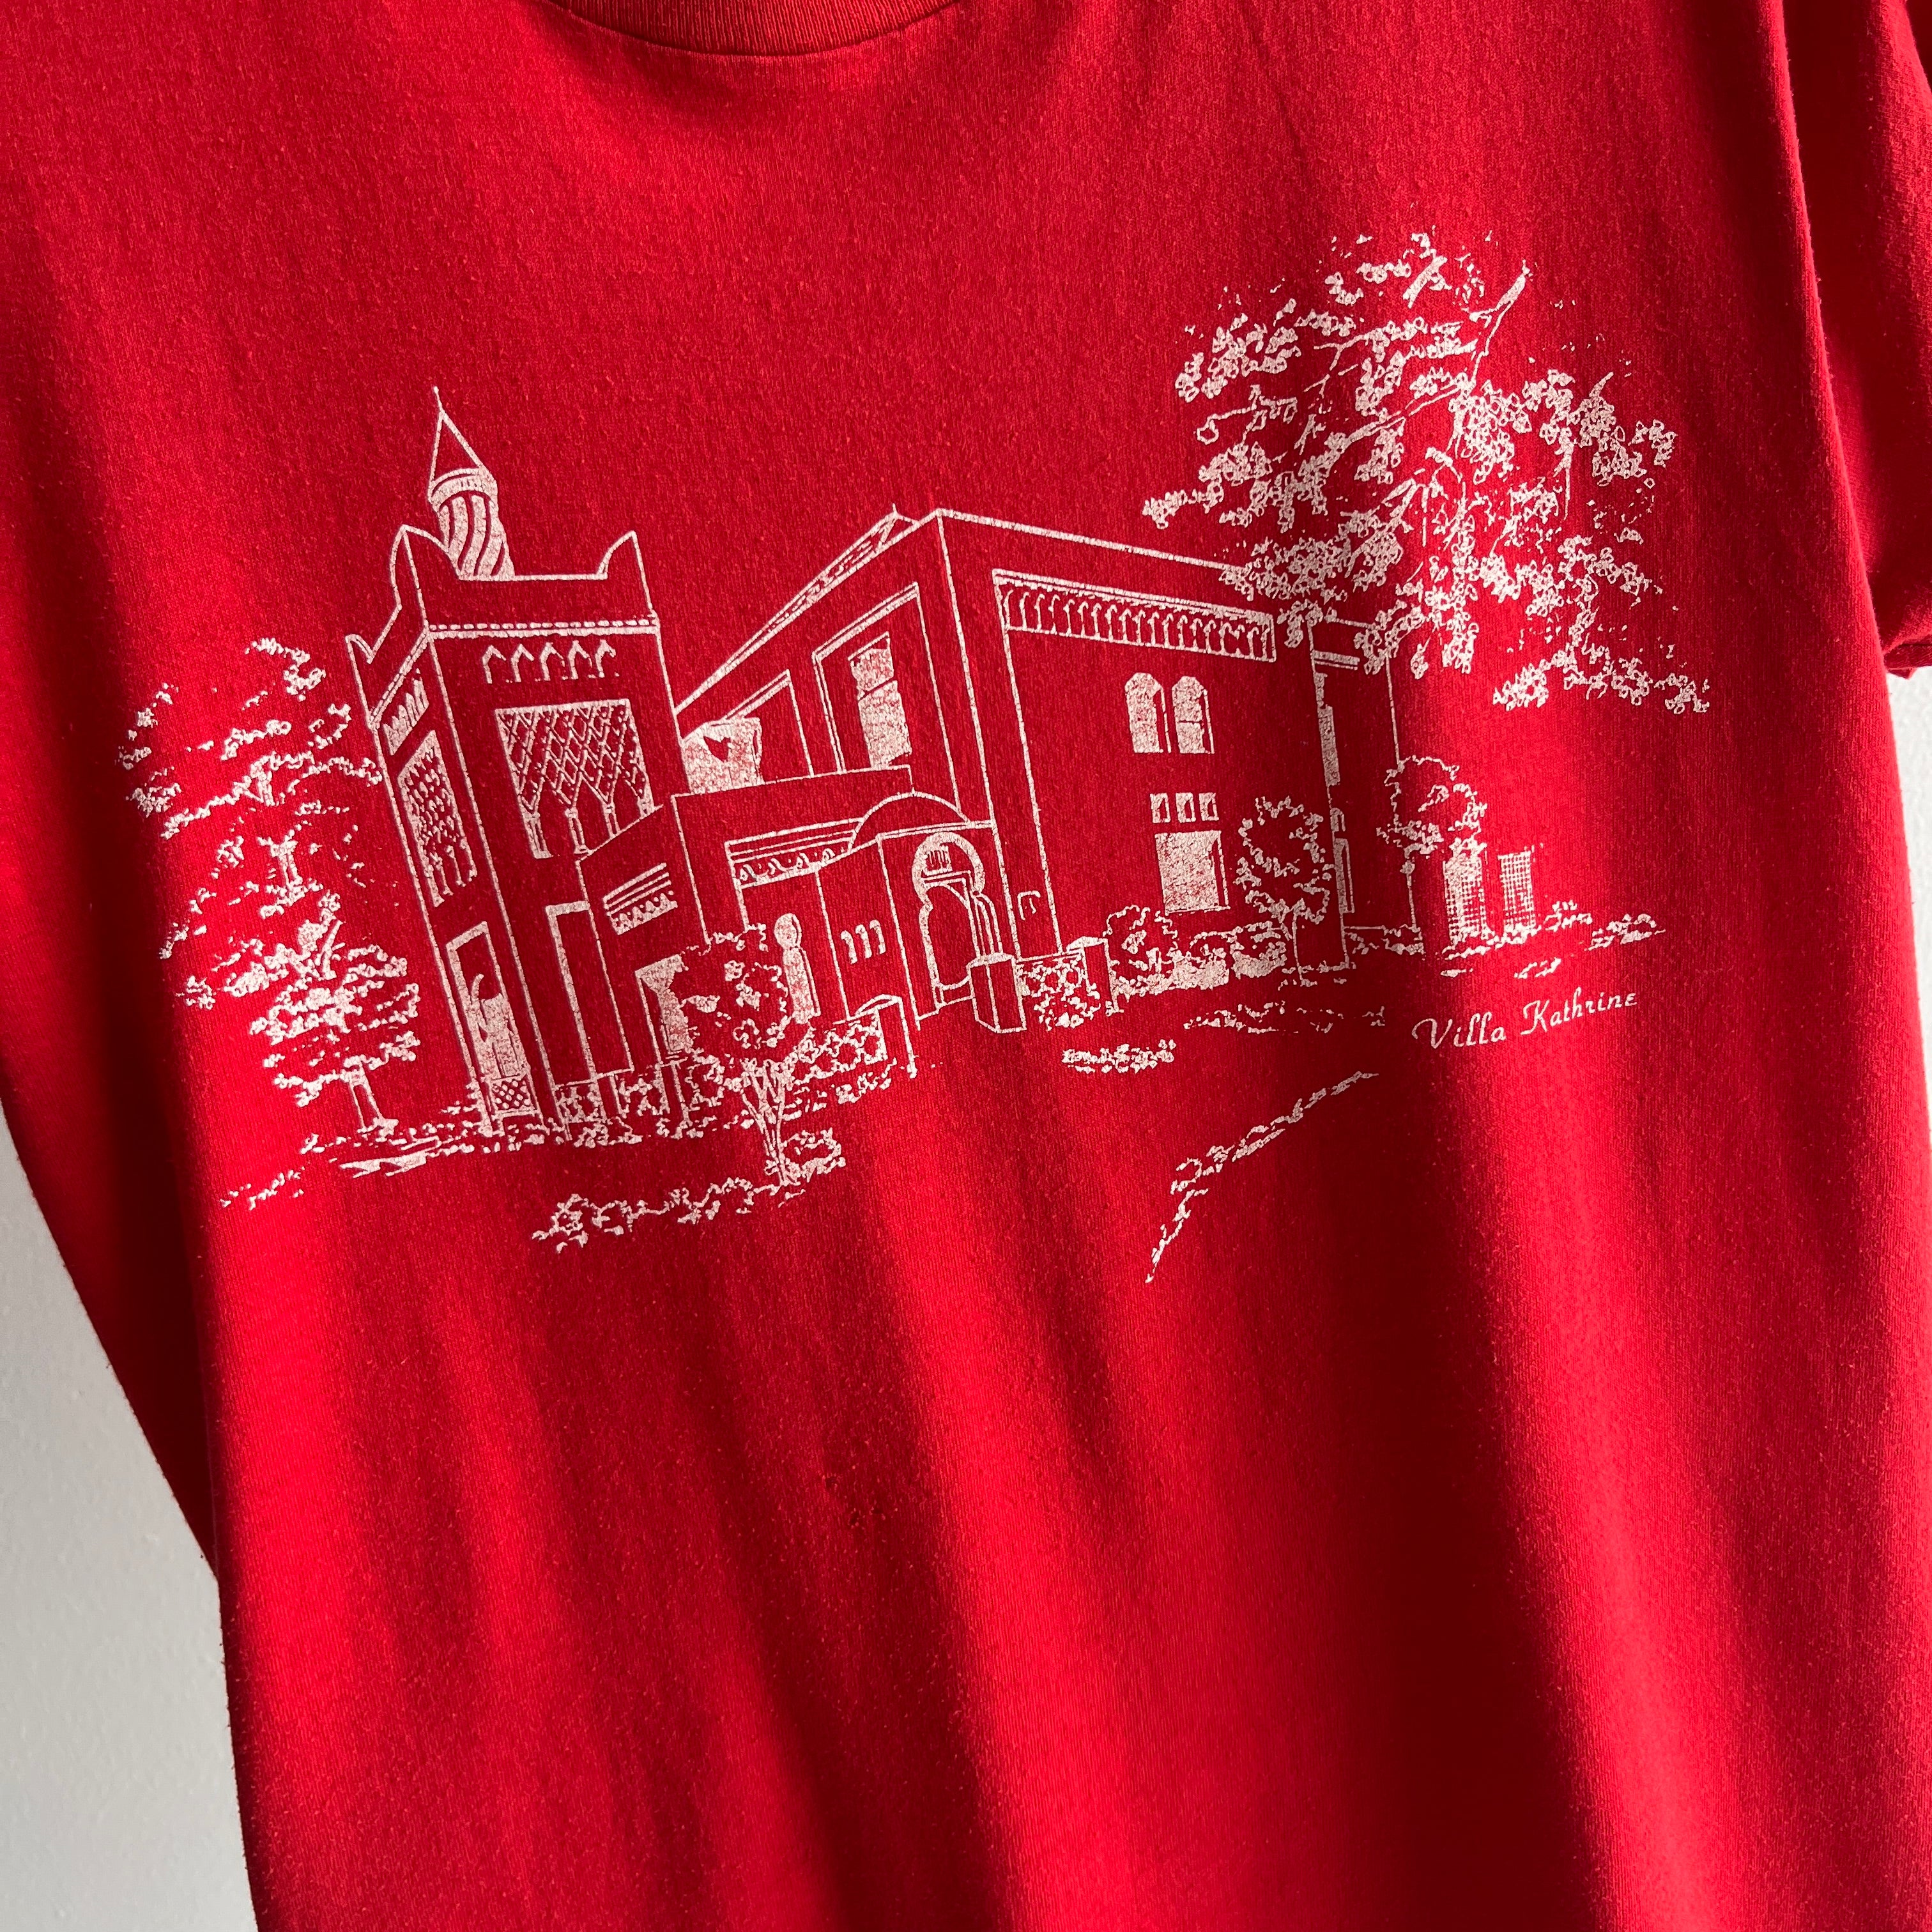 1980s Villa Katherine, Ouincy Illinois - T-Shirt